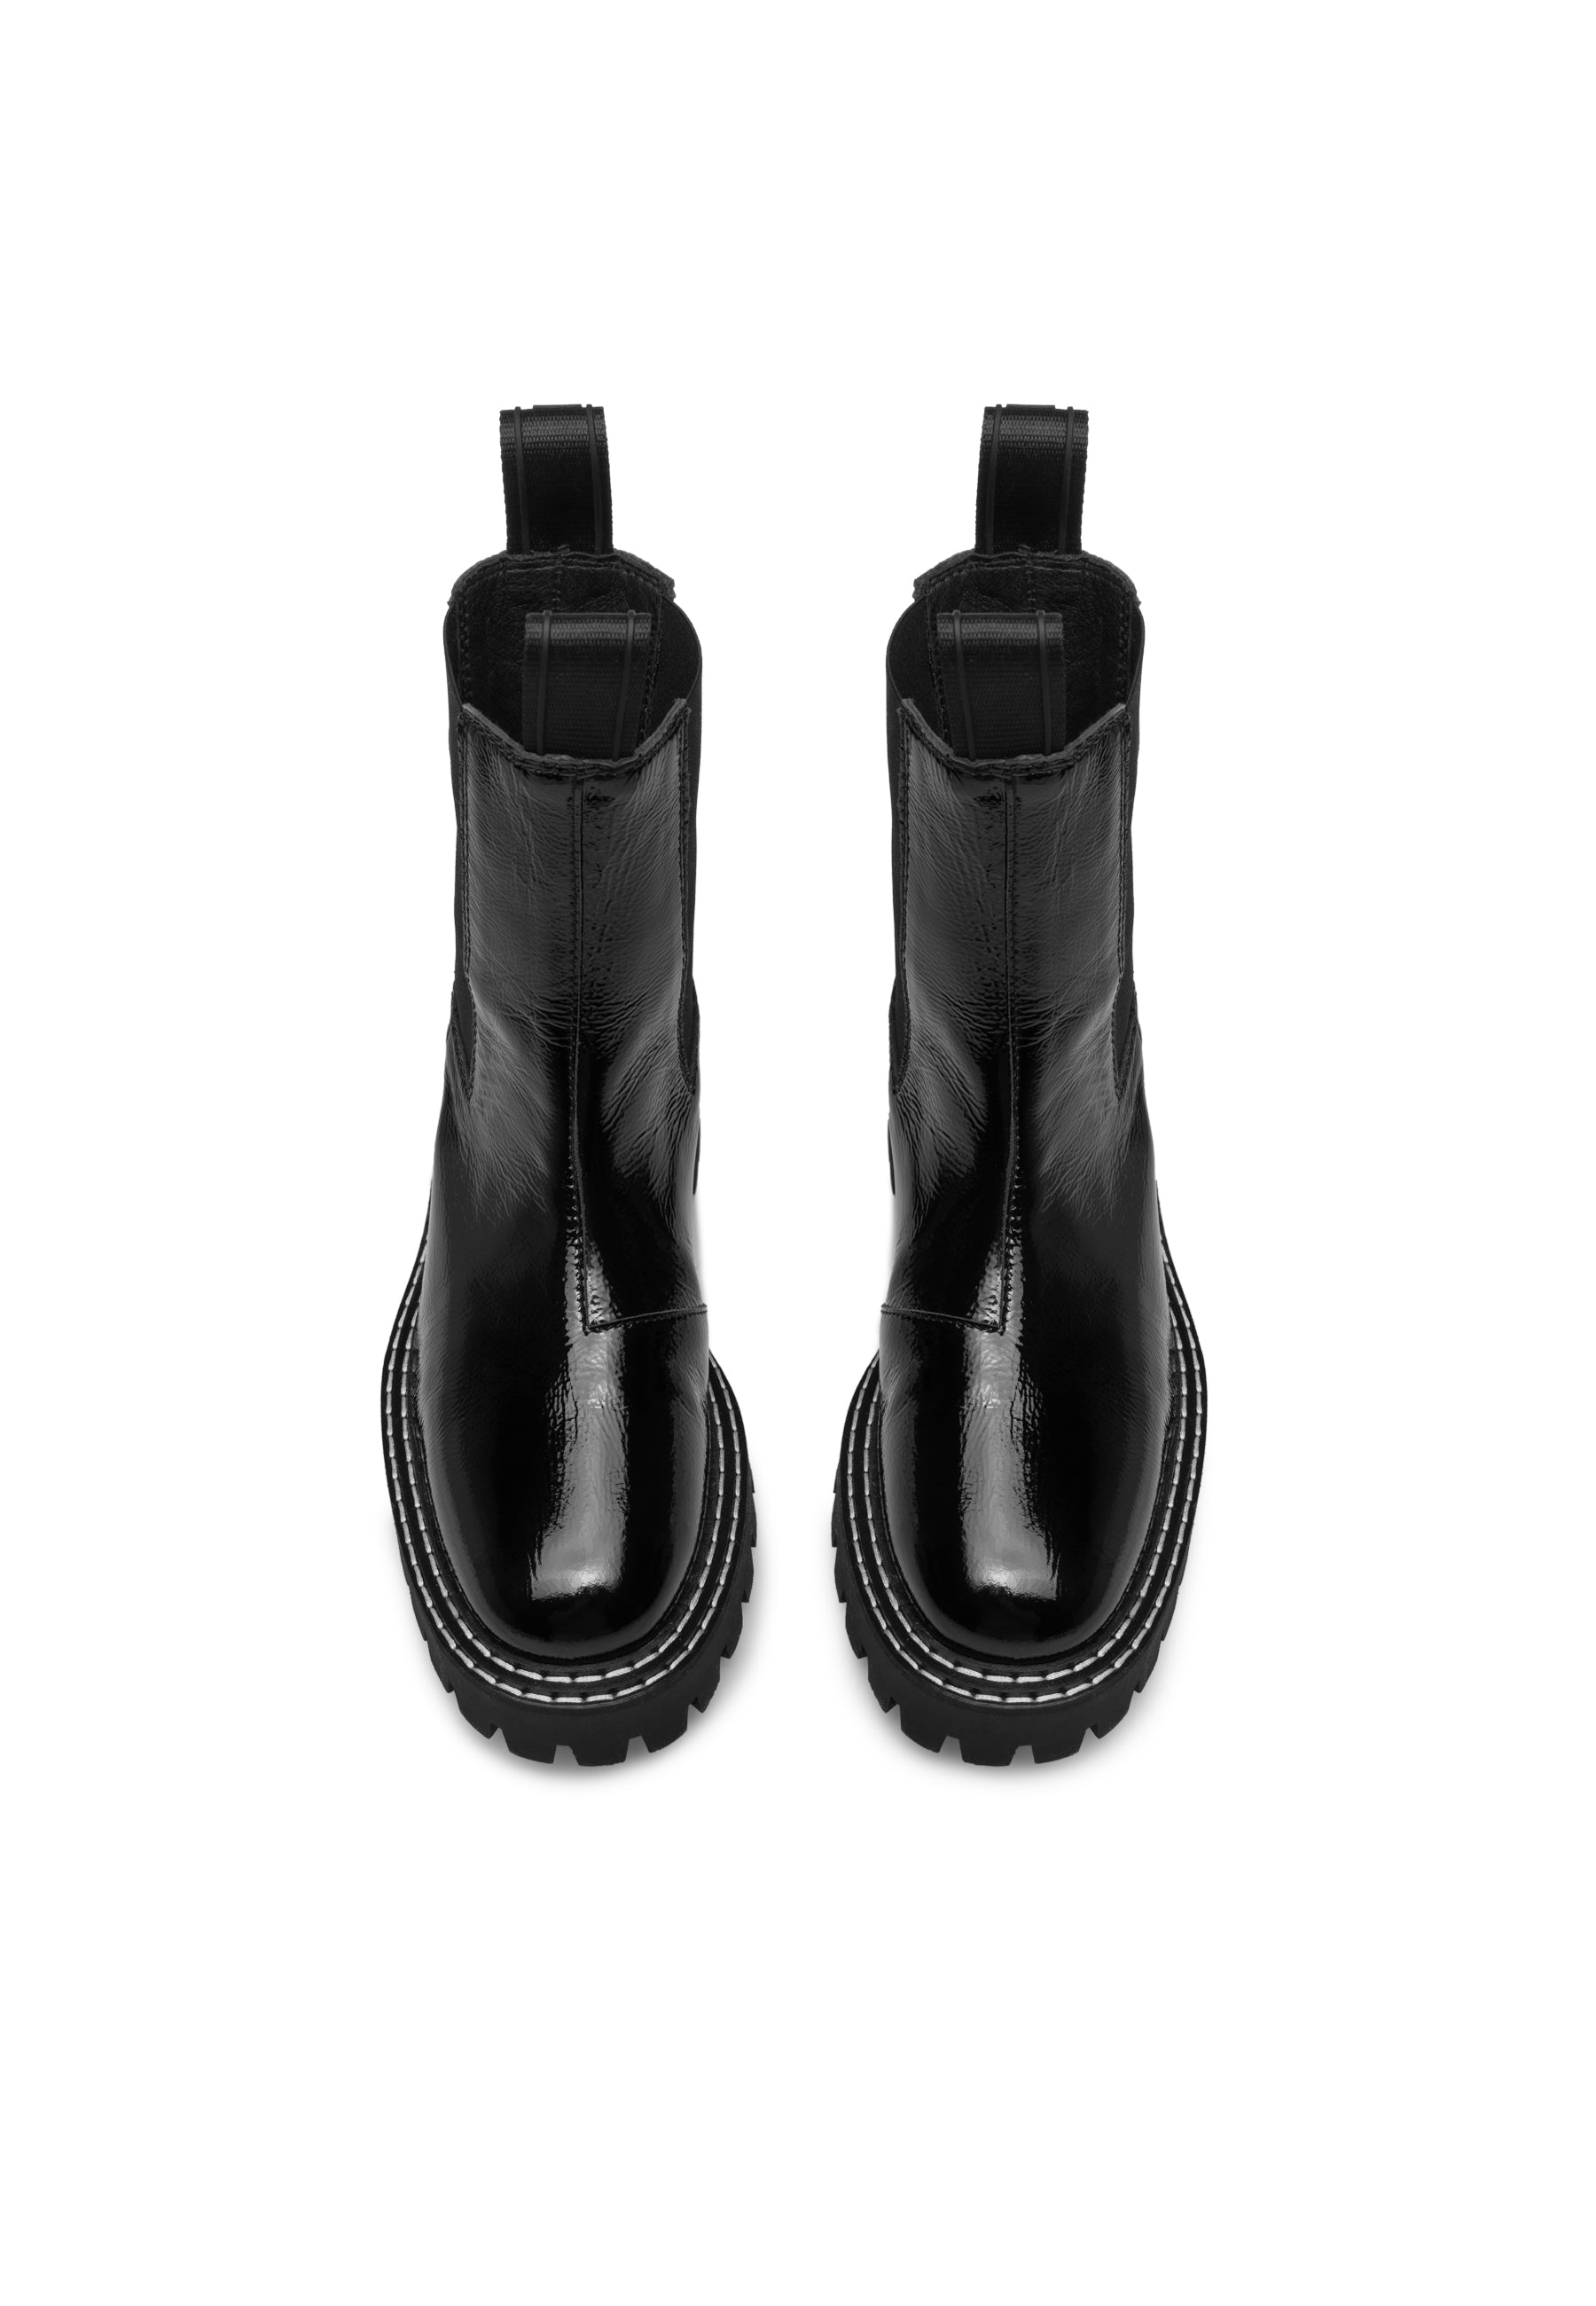 Daze Black Patent Leather Chelsea Boots LAST1677 - 3